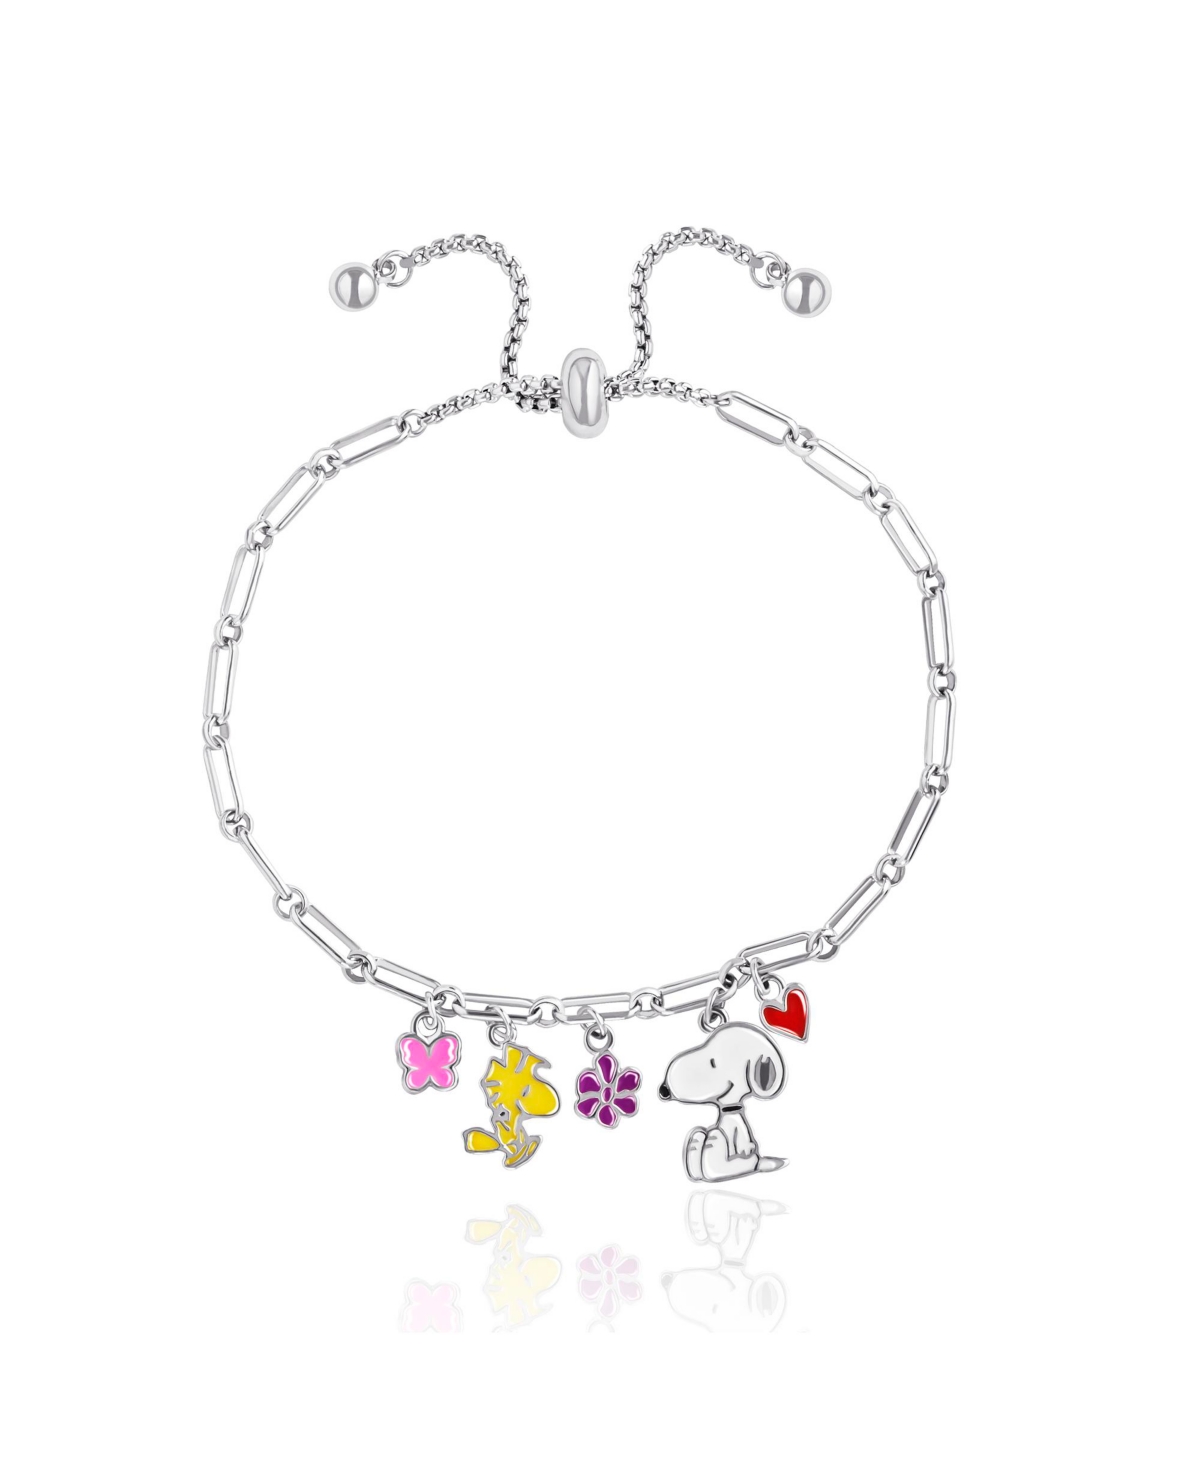 Snoopy Enamel Charm Woodstock, Flowers, Heart Lariat Paper Clip Chain Bracelet - Silver